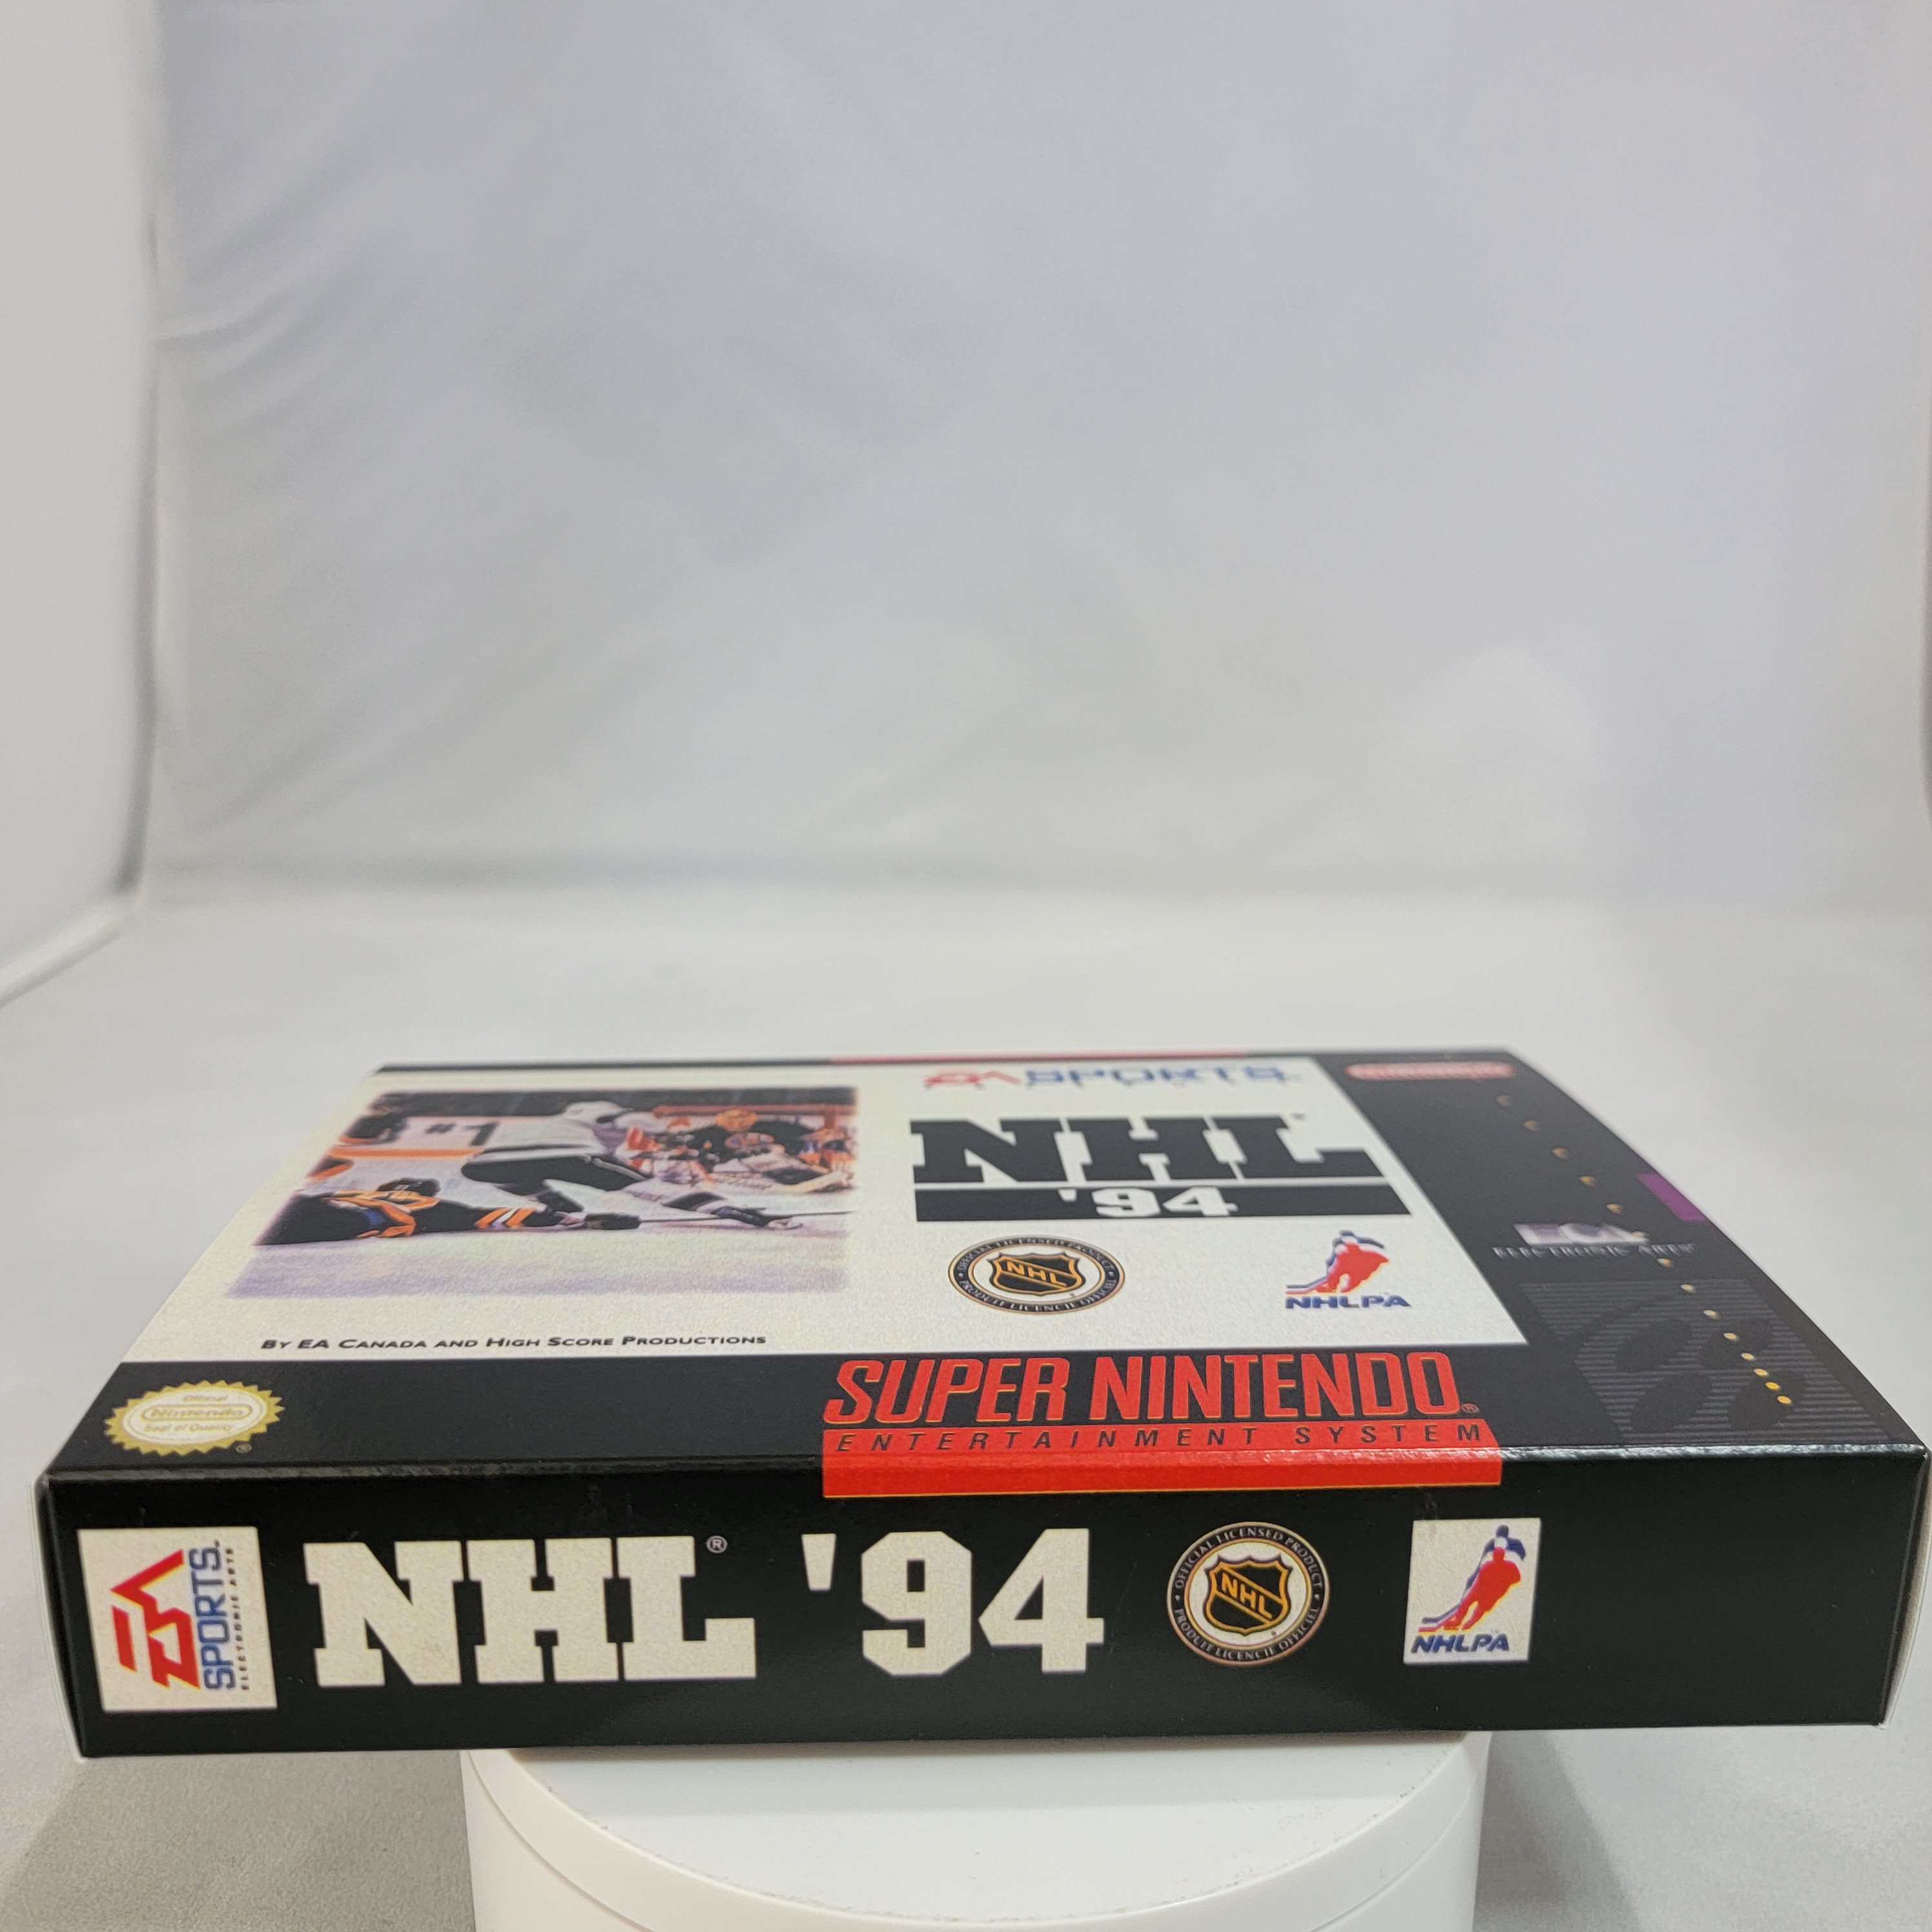 NHL '94, Nintendo